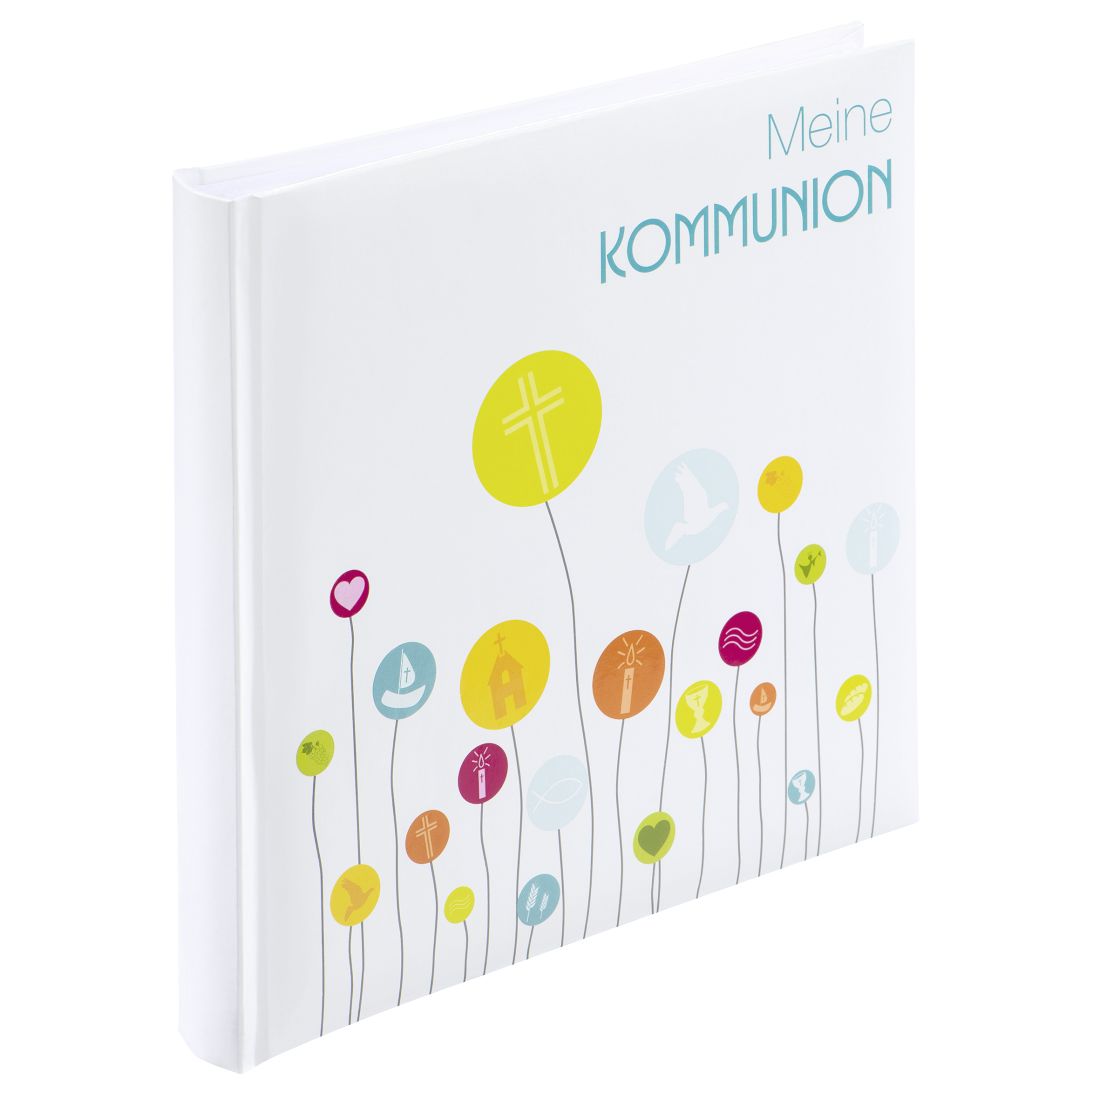 Image of 2753 Buch-Album "Kommunion" 50 weiße Seiten 25x25cm Weiß